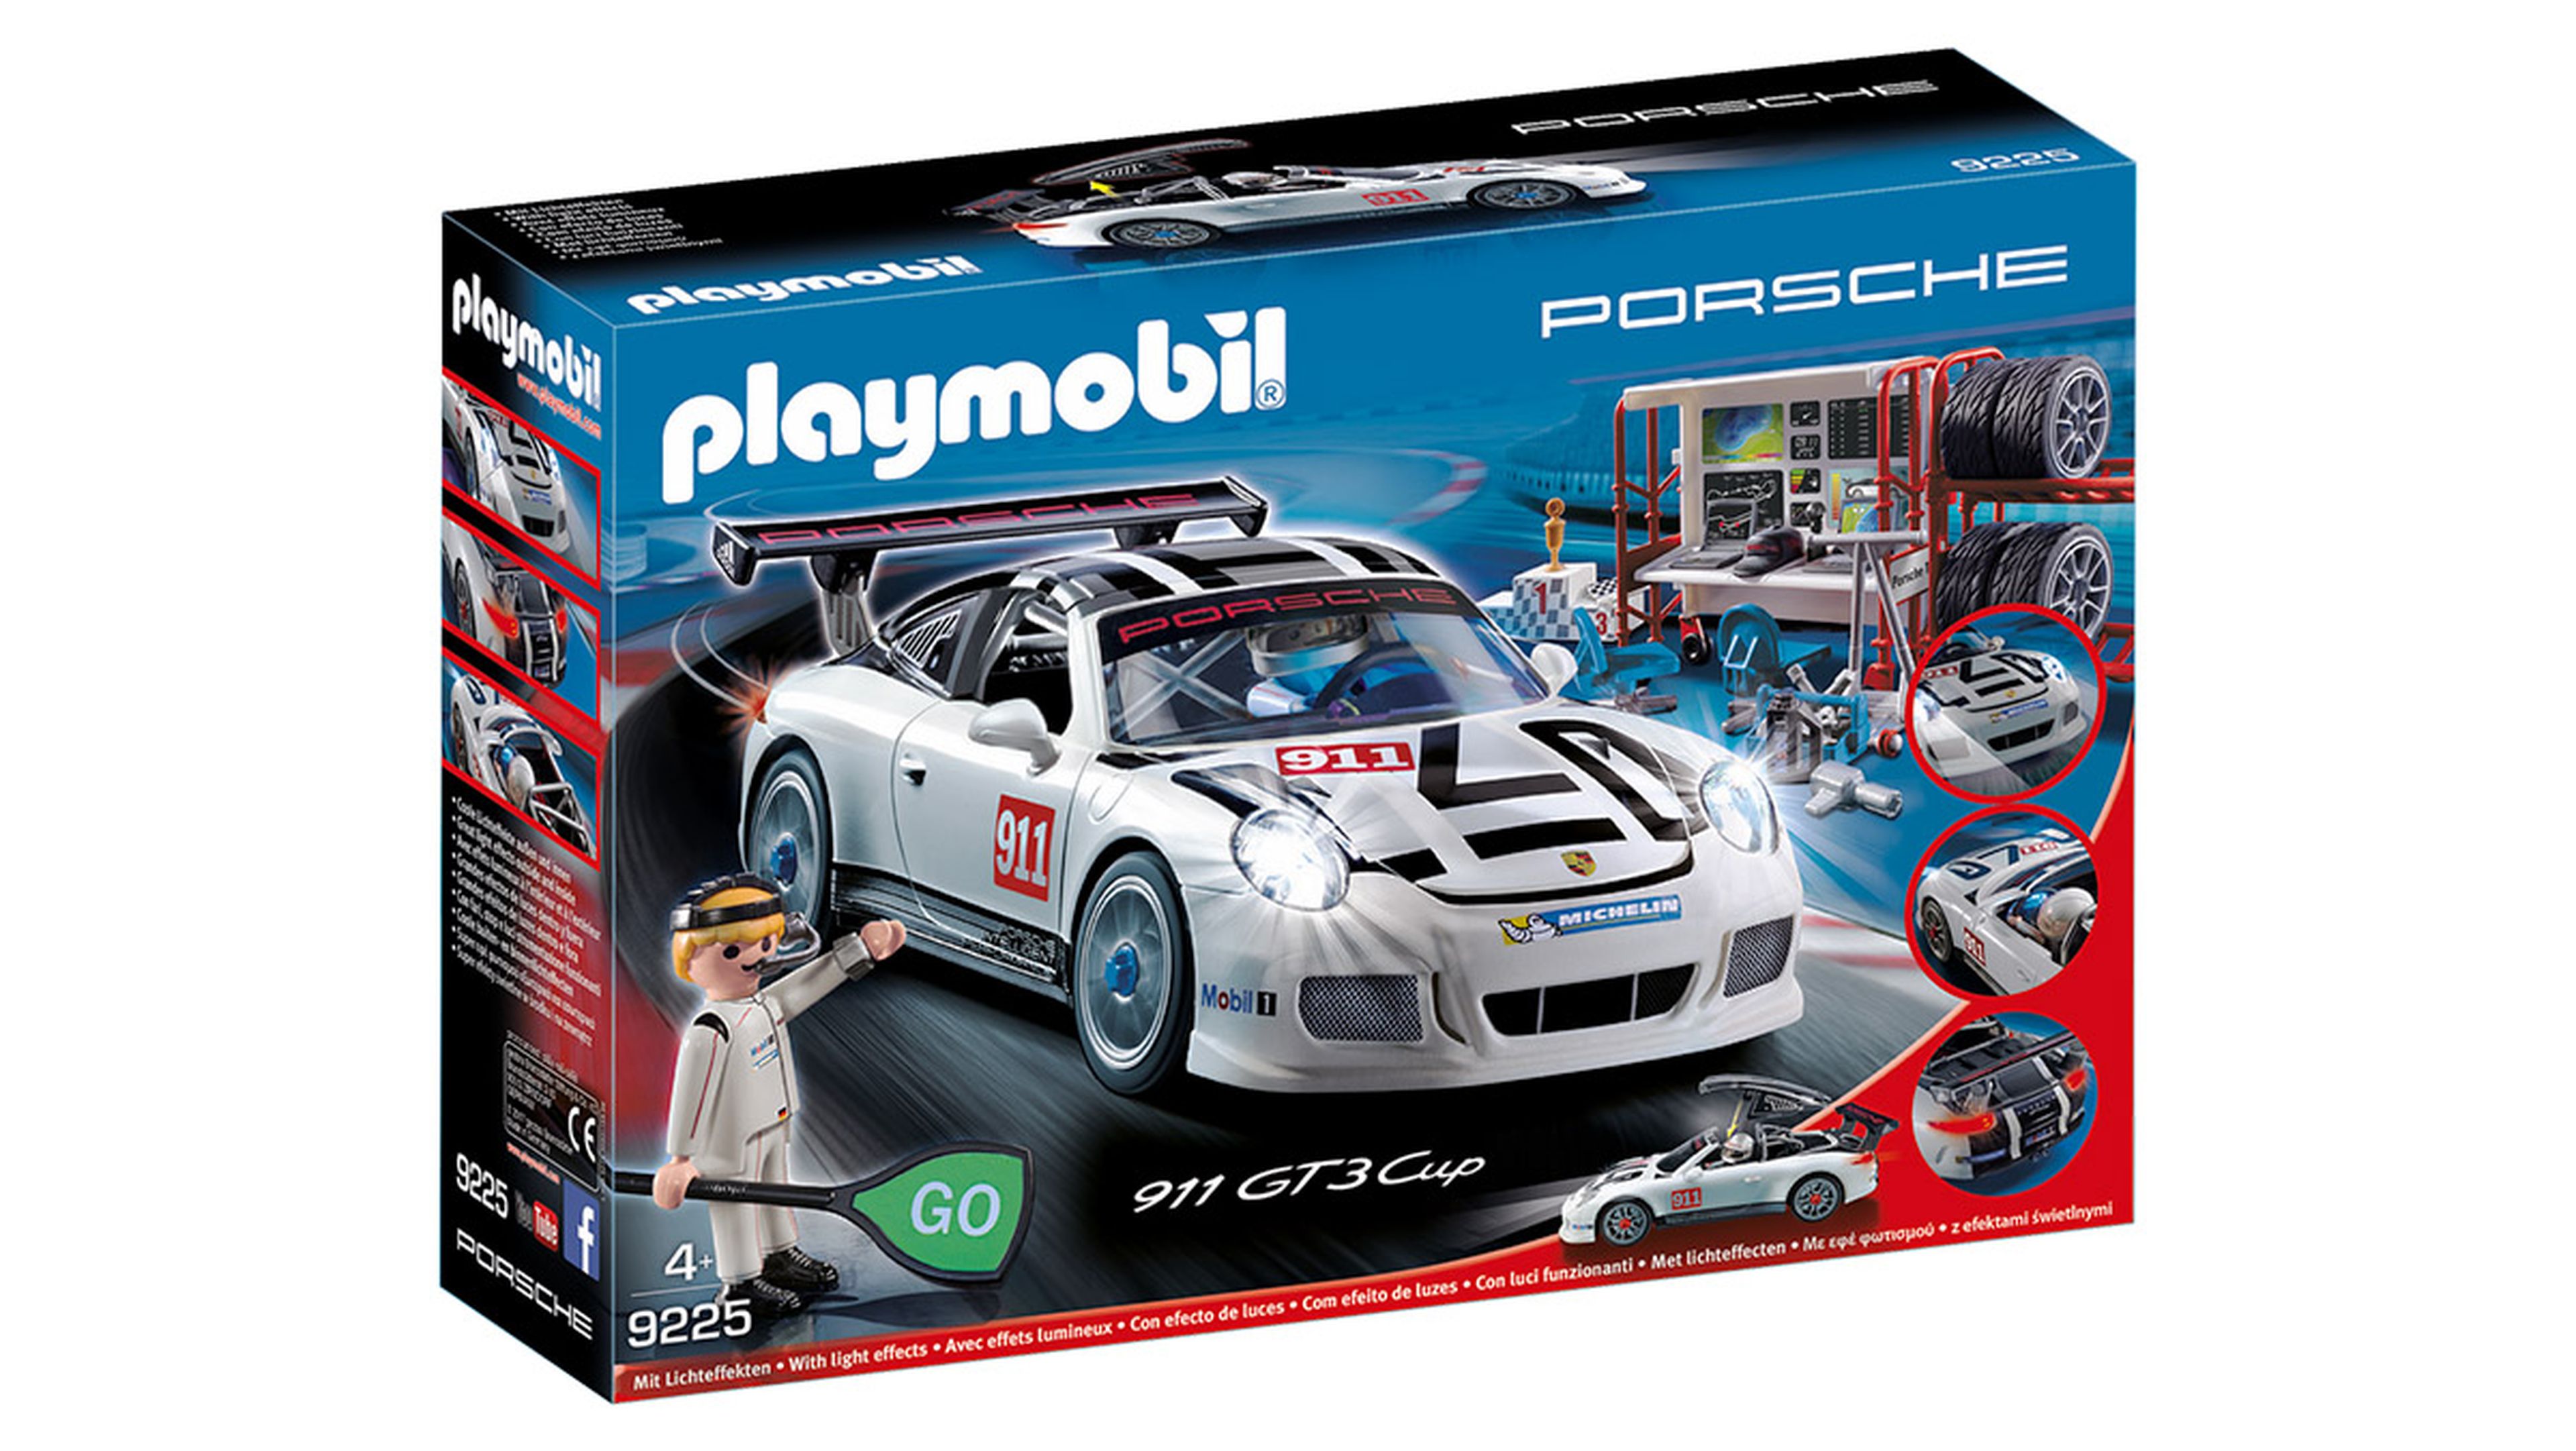 Los 10 mejores regalos para fanáticos de Porsche - 911 GT3 Cup de Playmobil